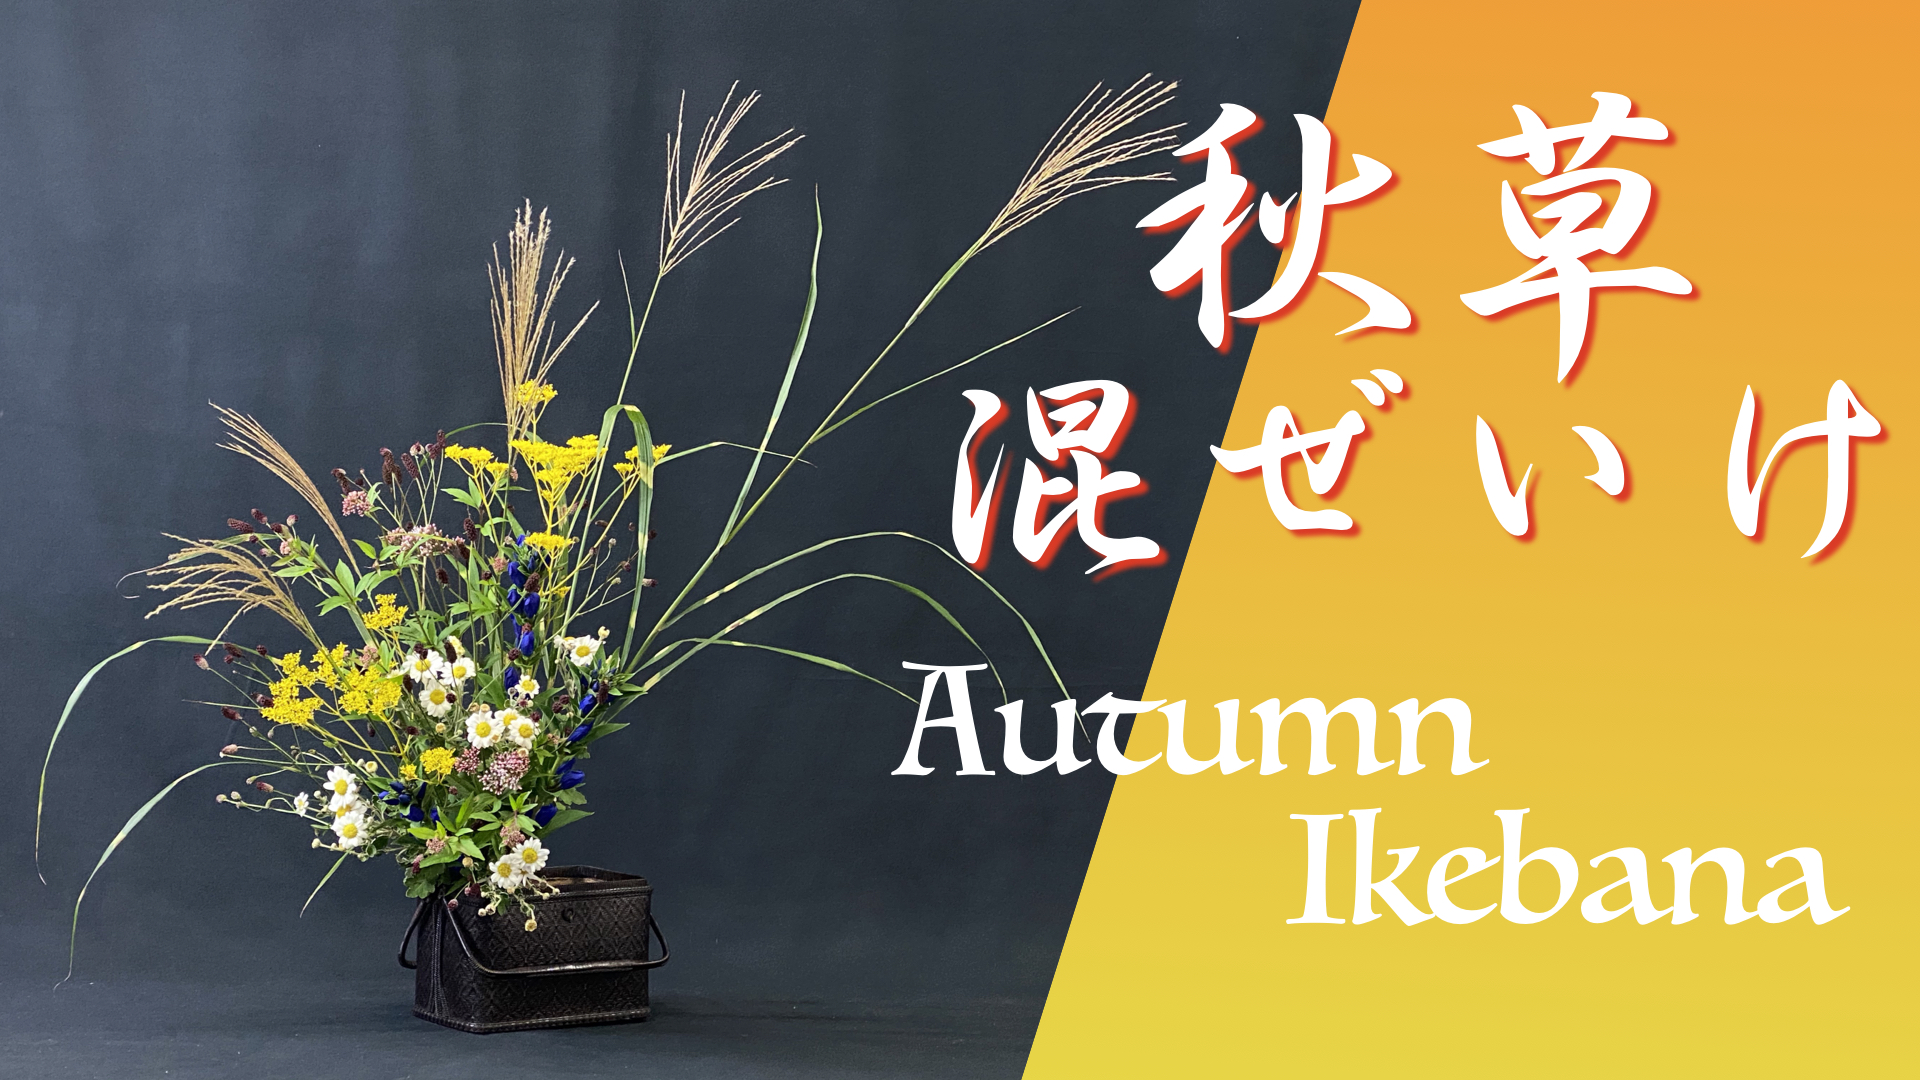 生け花 これぞ日本の秋 代表的な秋草 6種 を竹籠に爽やかに生けてみた Ikebana いけばな 古流かたばみ会